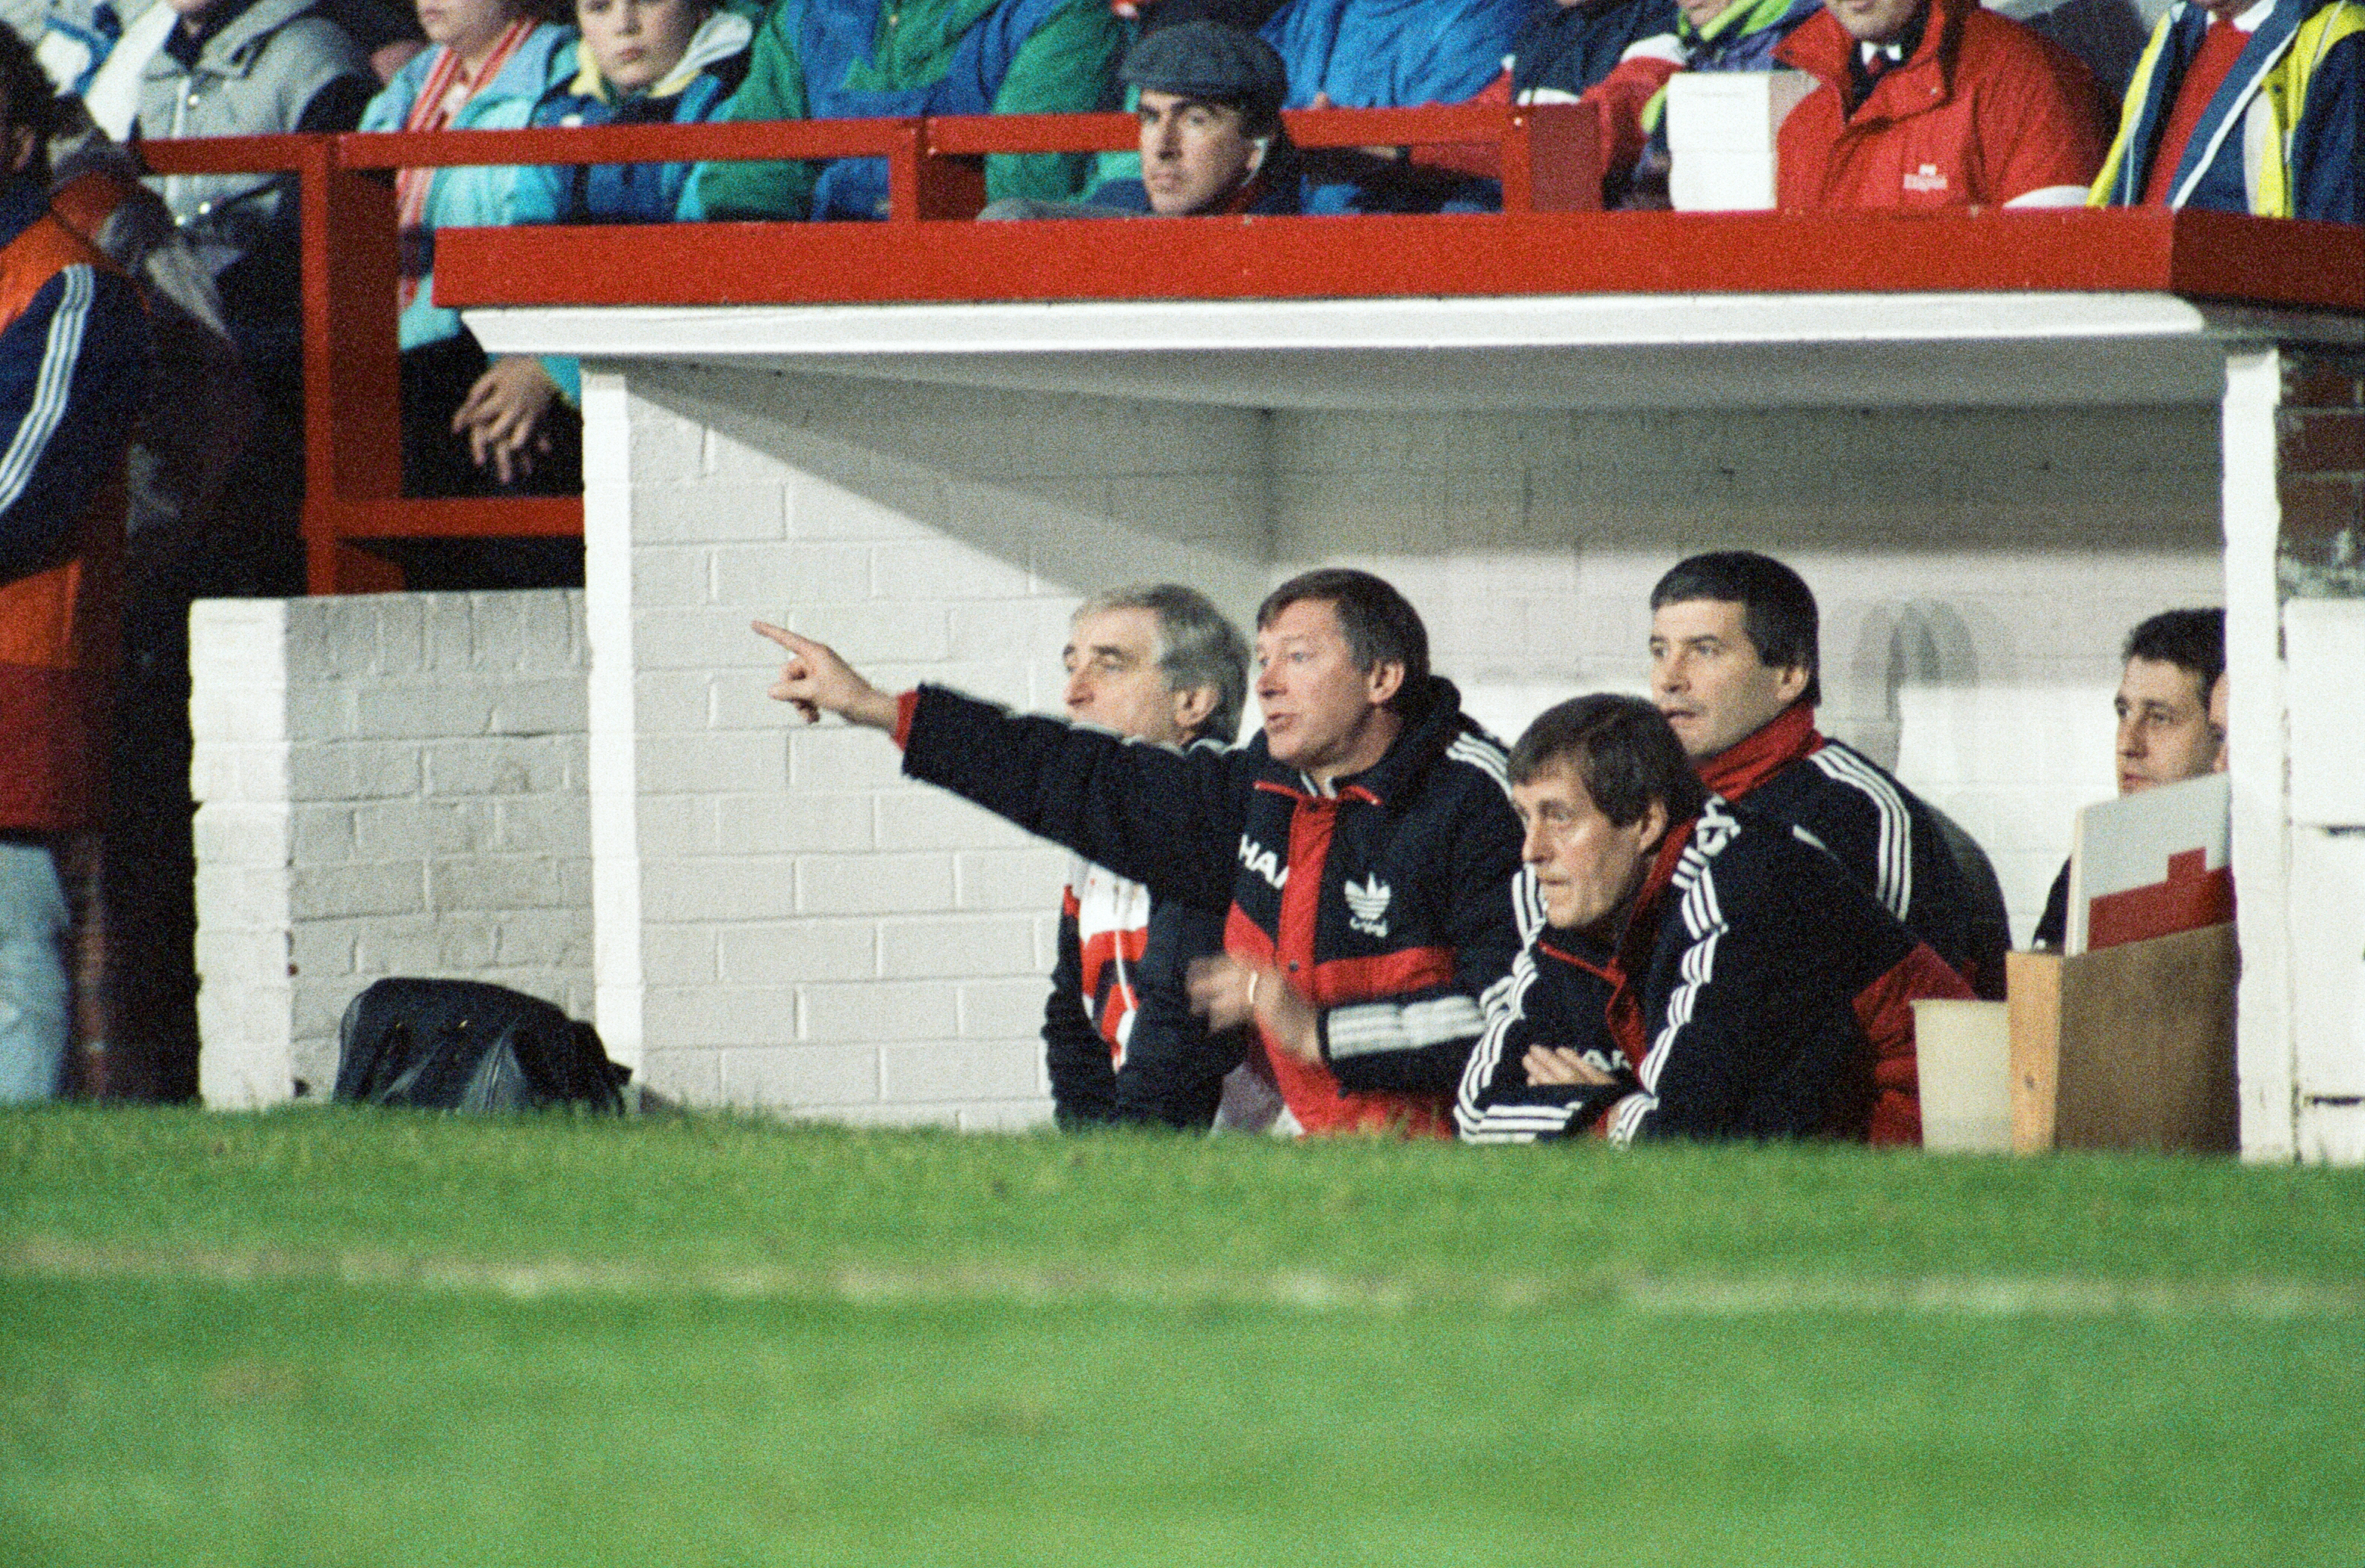 Der Job von Sir Alex Ferguson wurde angeblich mit einem FA-Cup-Sieg im Forest im Jahr 1990 gerettet